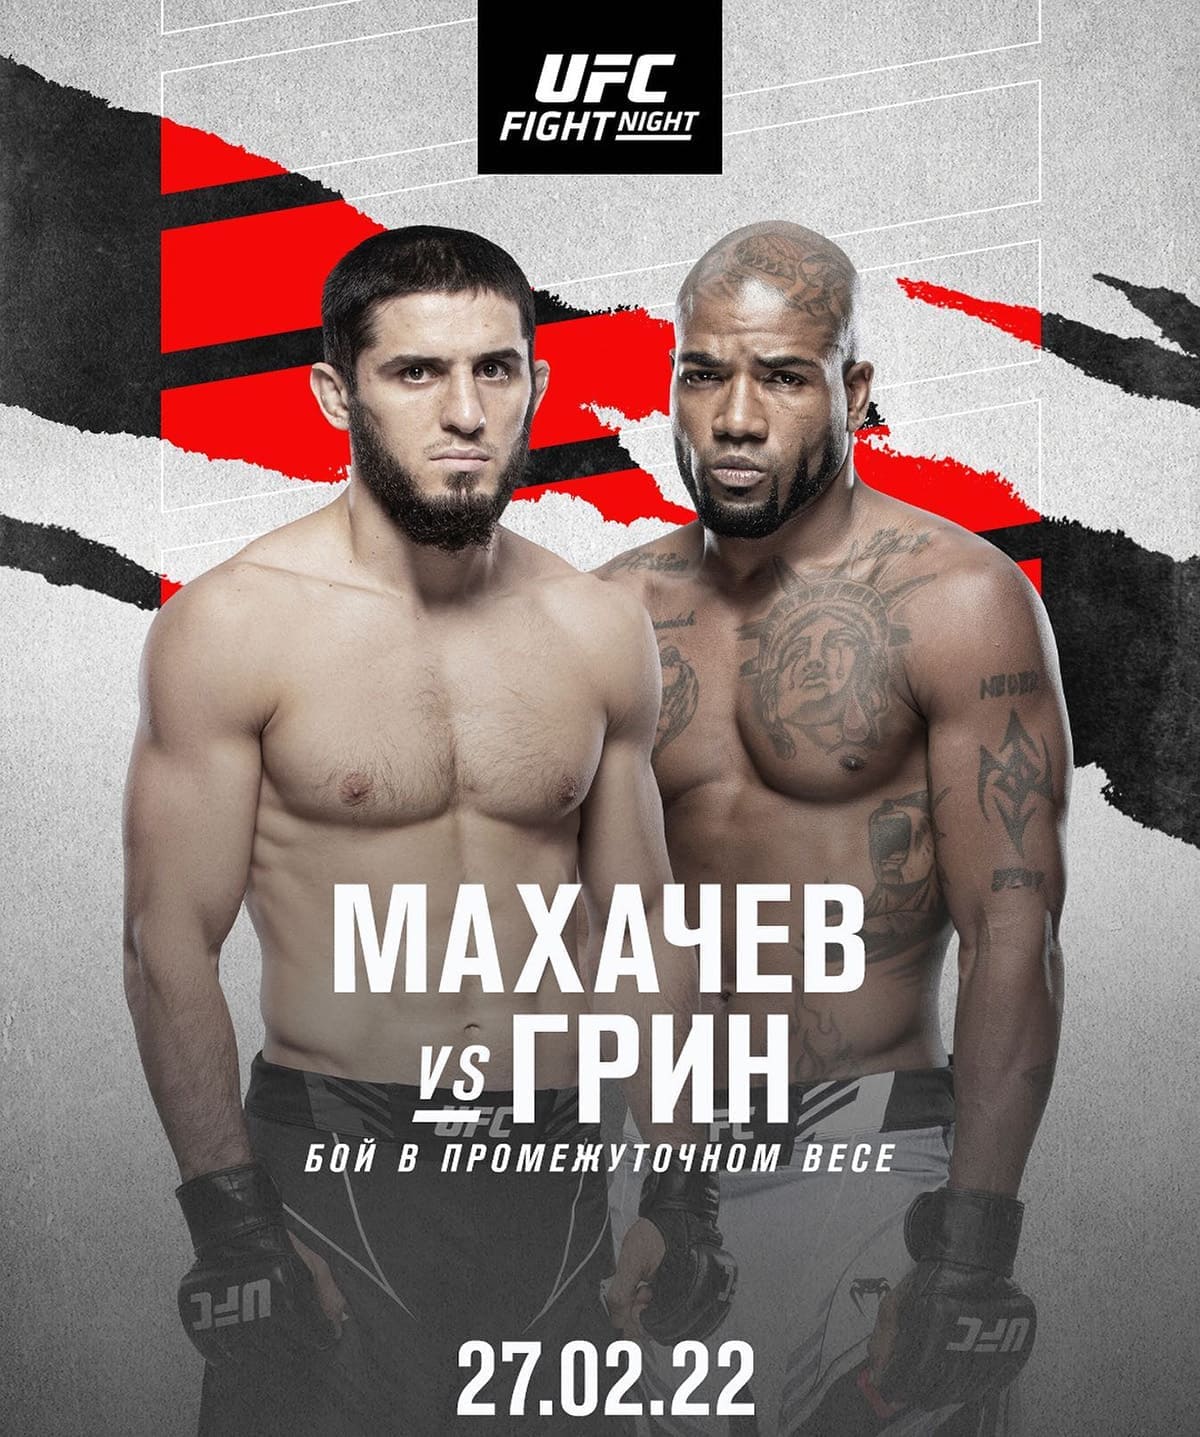 UFC Fight Night 202: Махачев - Грин дата проведения, кард, участники и результаты